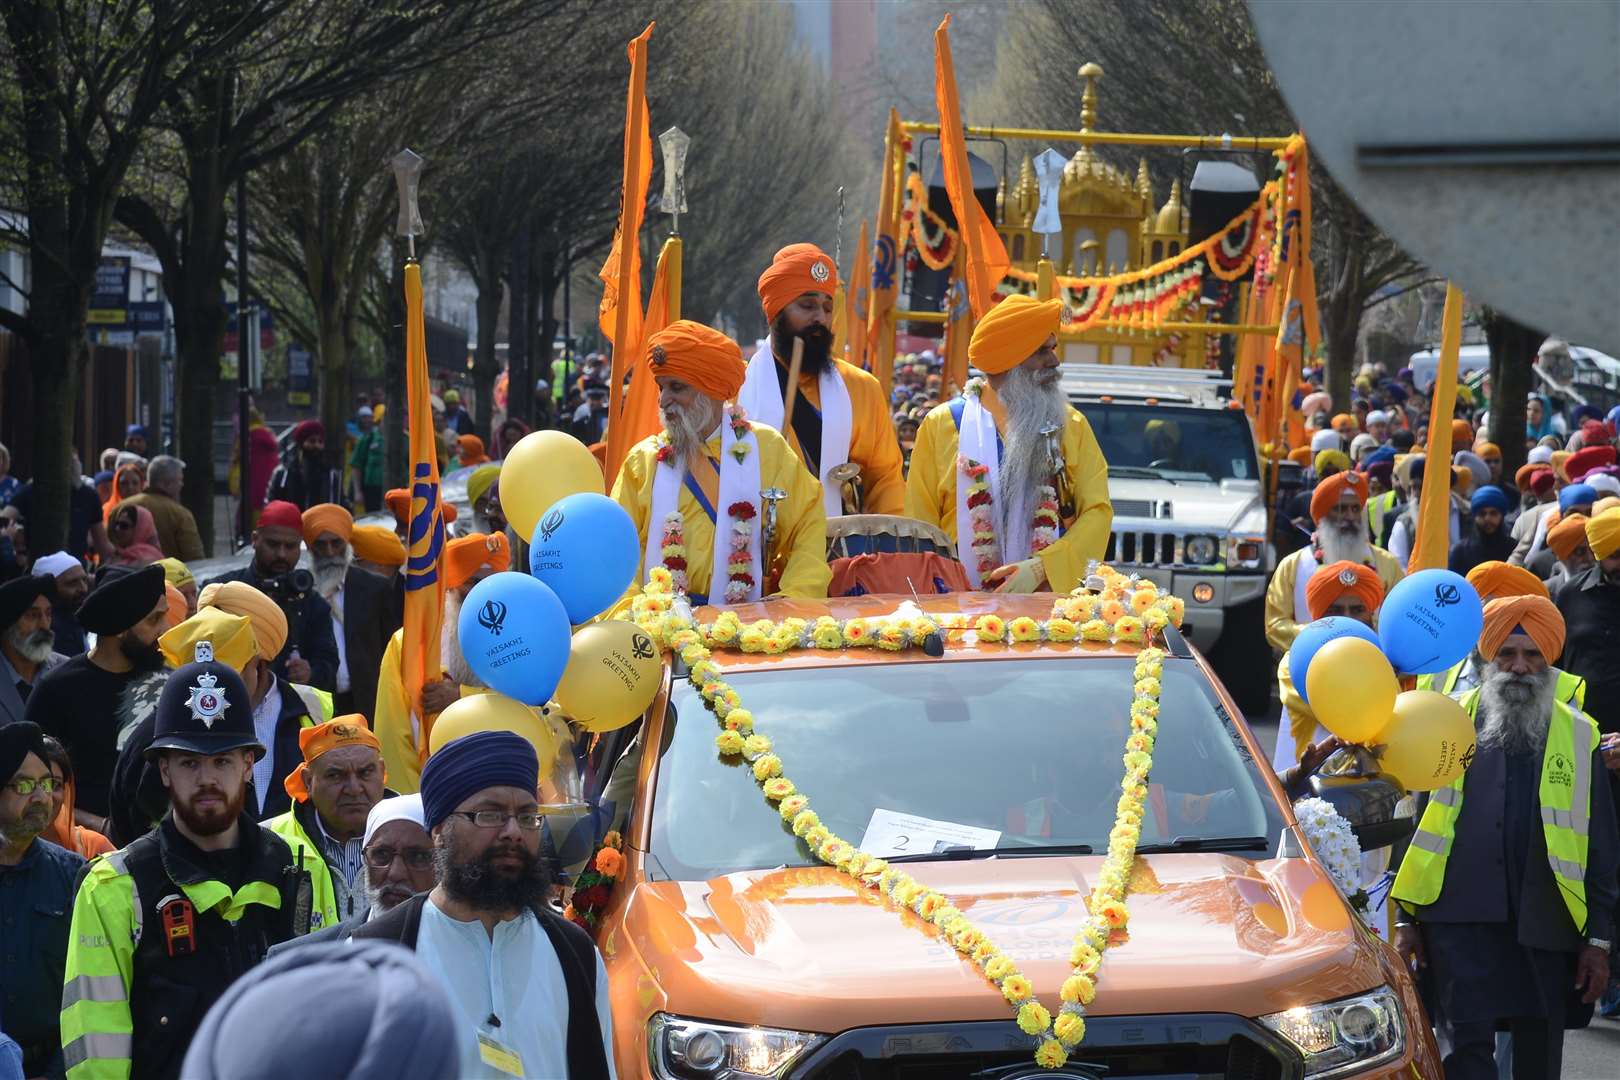 Vasakhi celebrations and parade. Guru Nanak Darbar Gurdwara, Gravesend. Picture: Gary Browne